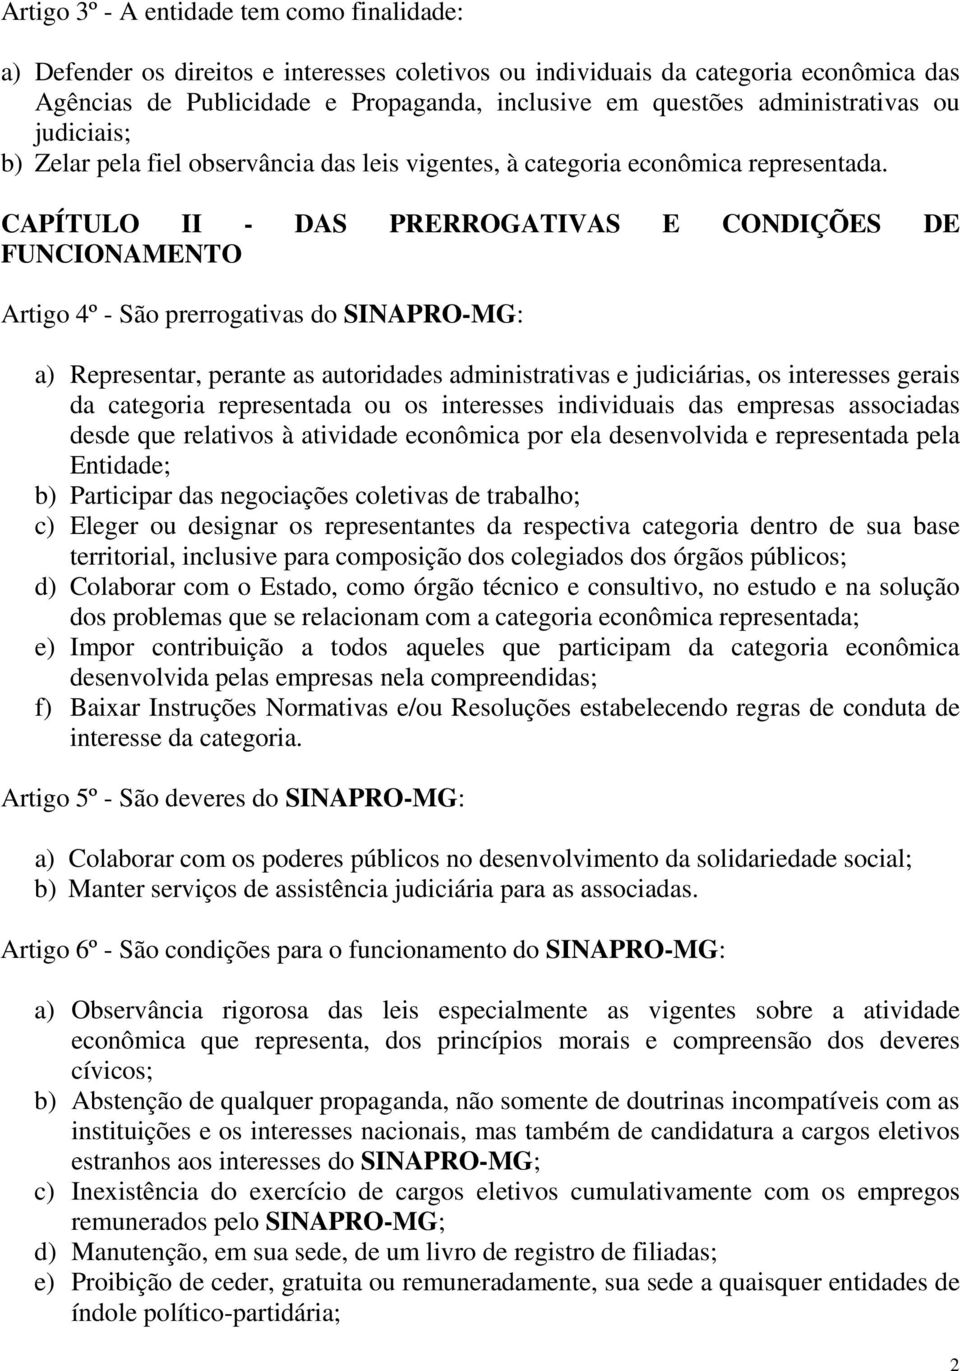 CAPÍTULO II - DAS PRERROGATIVAS E CONDIÇÕES DE FUNCIONAMENTO Artigo 4º - São prerrogativas do SINAPRO-MG: a) Representar, perante as autoridades administrativas e judiciárias, os interesses gerais da